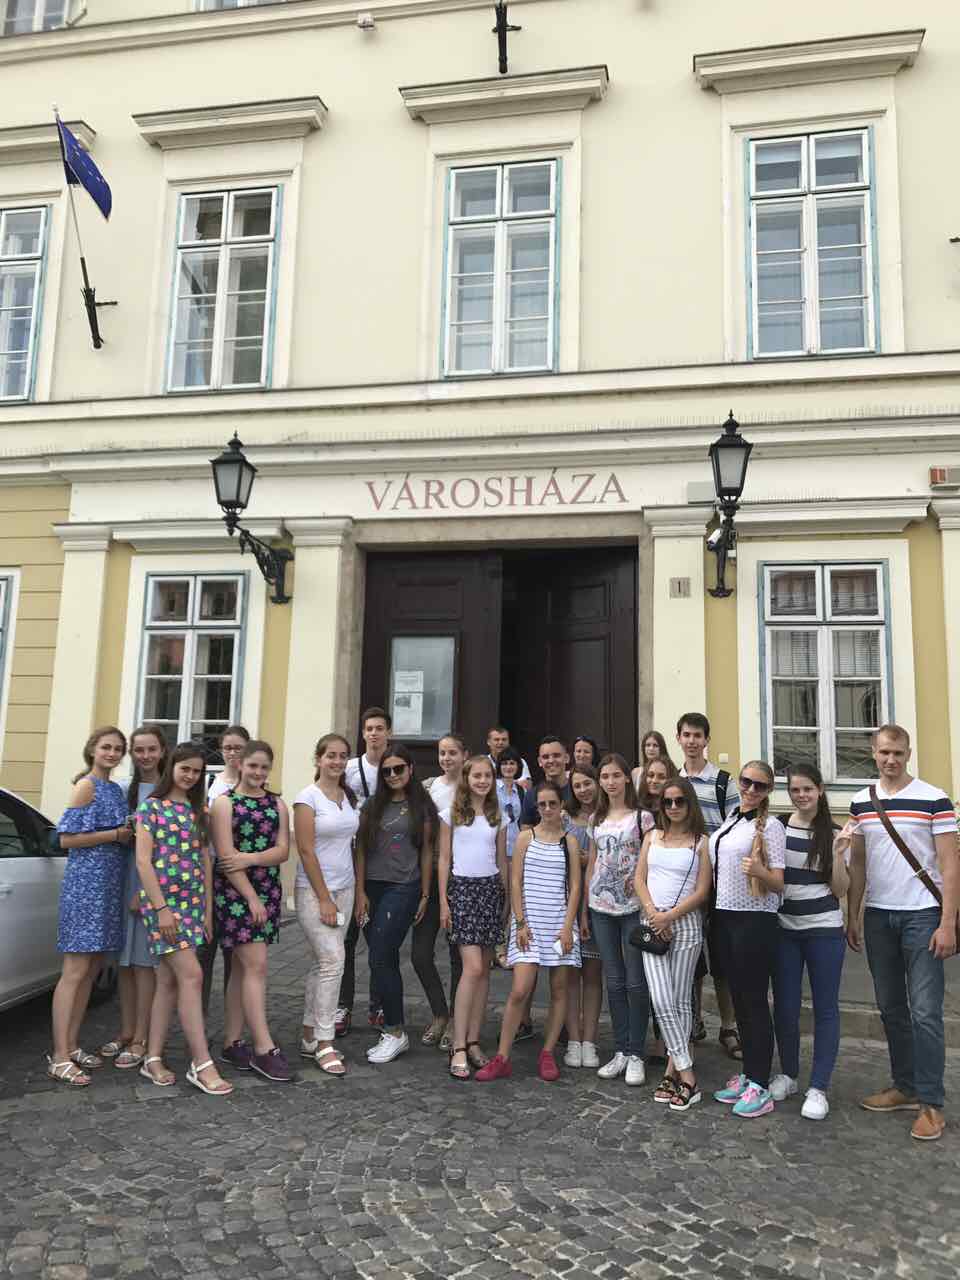 Цього разу двері для набуття позитивних навичок управління та адміністрації для учасників «Школи лідерства» відчинила сусідня Угорщина.